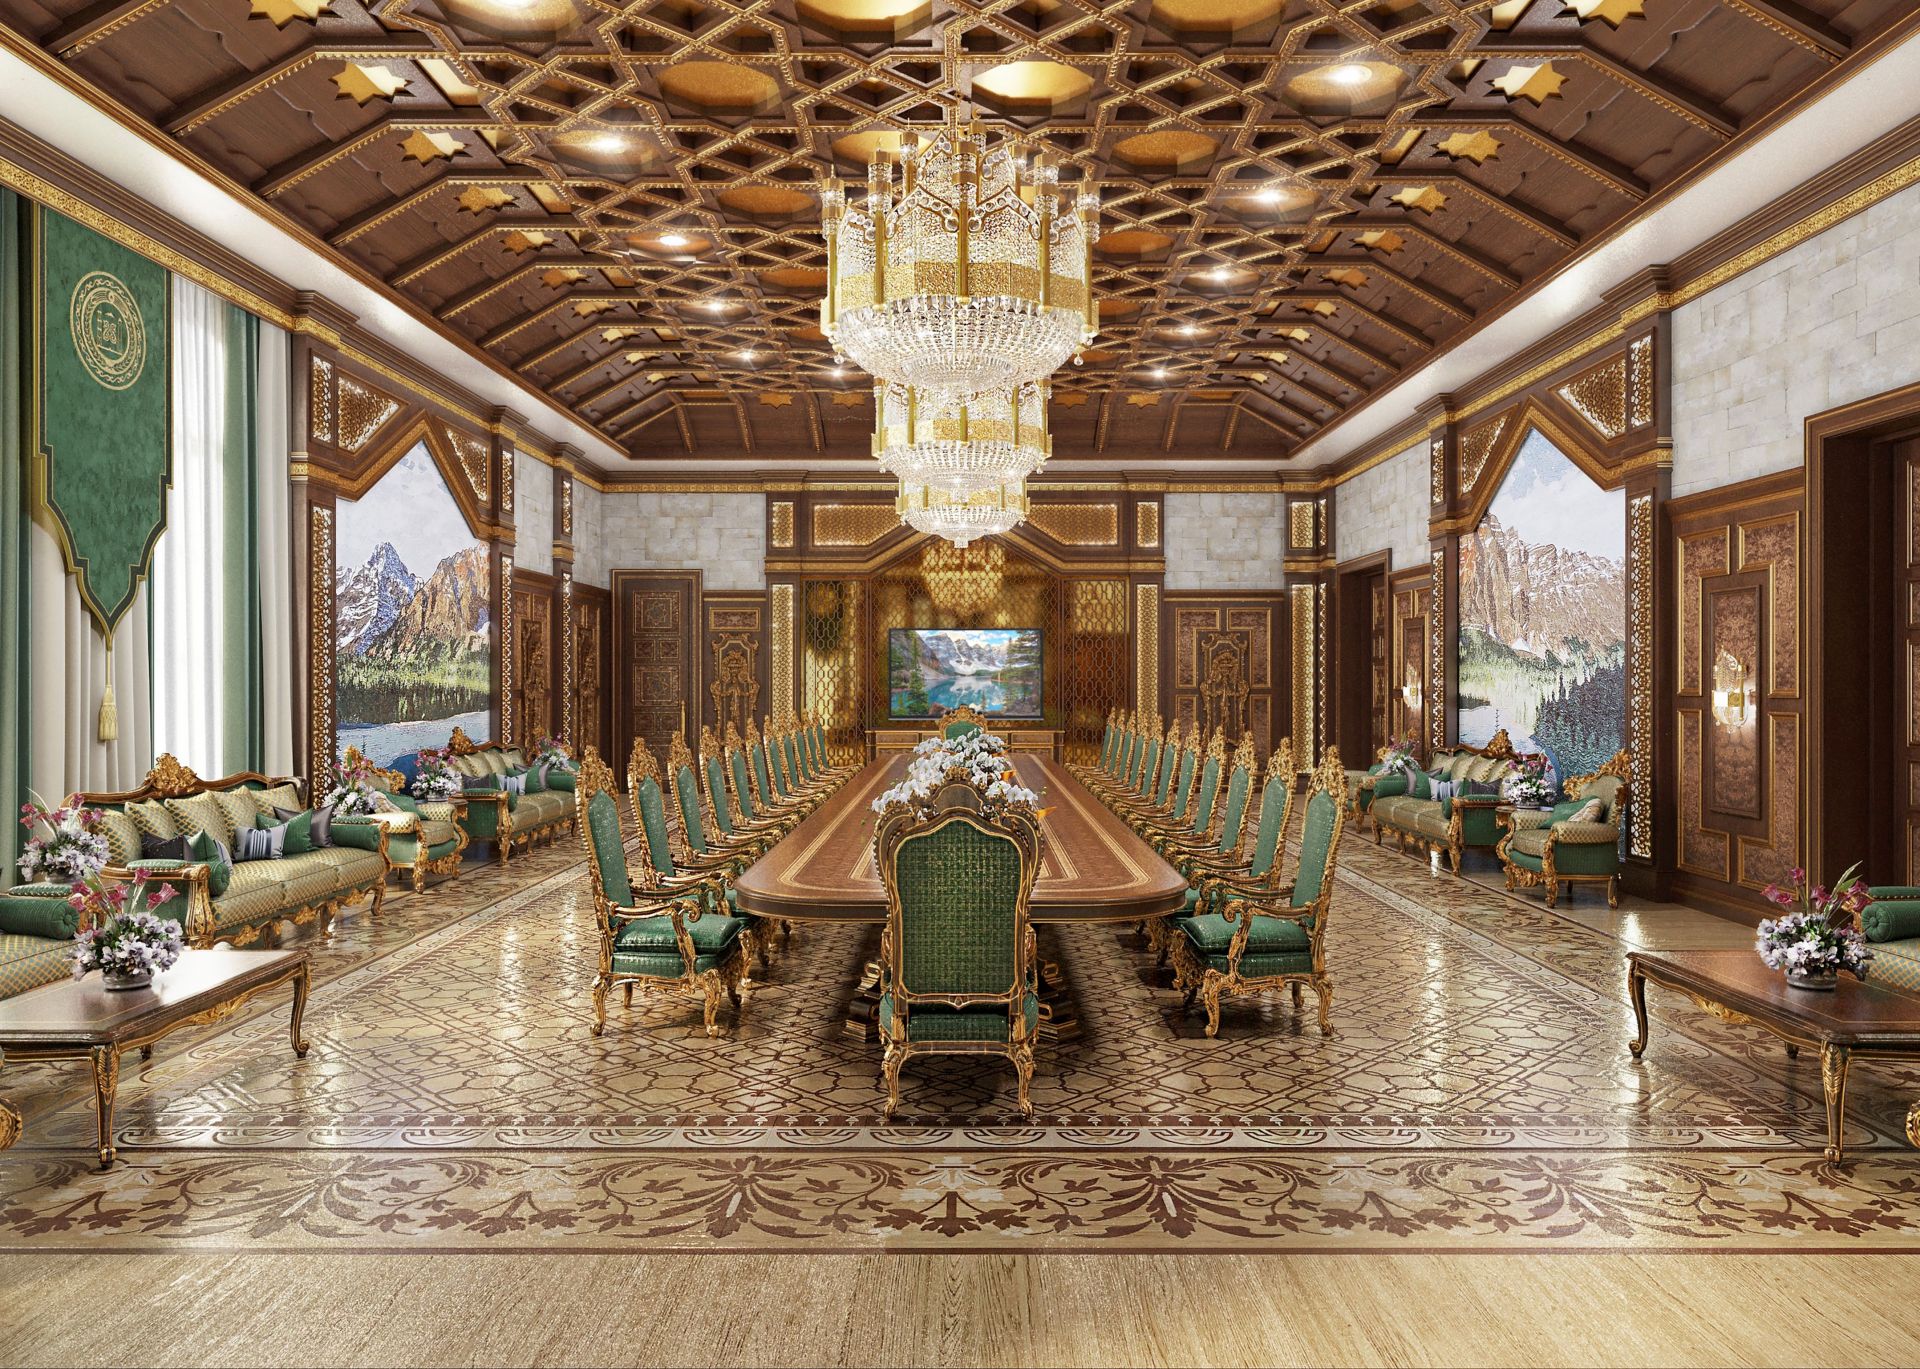 Luxury dining hall